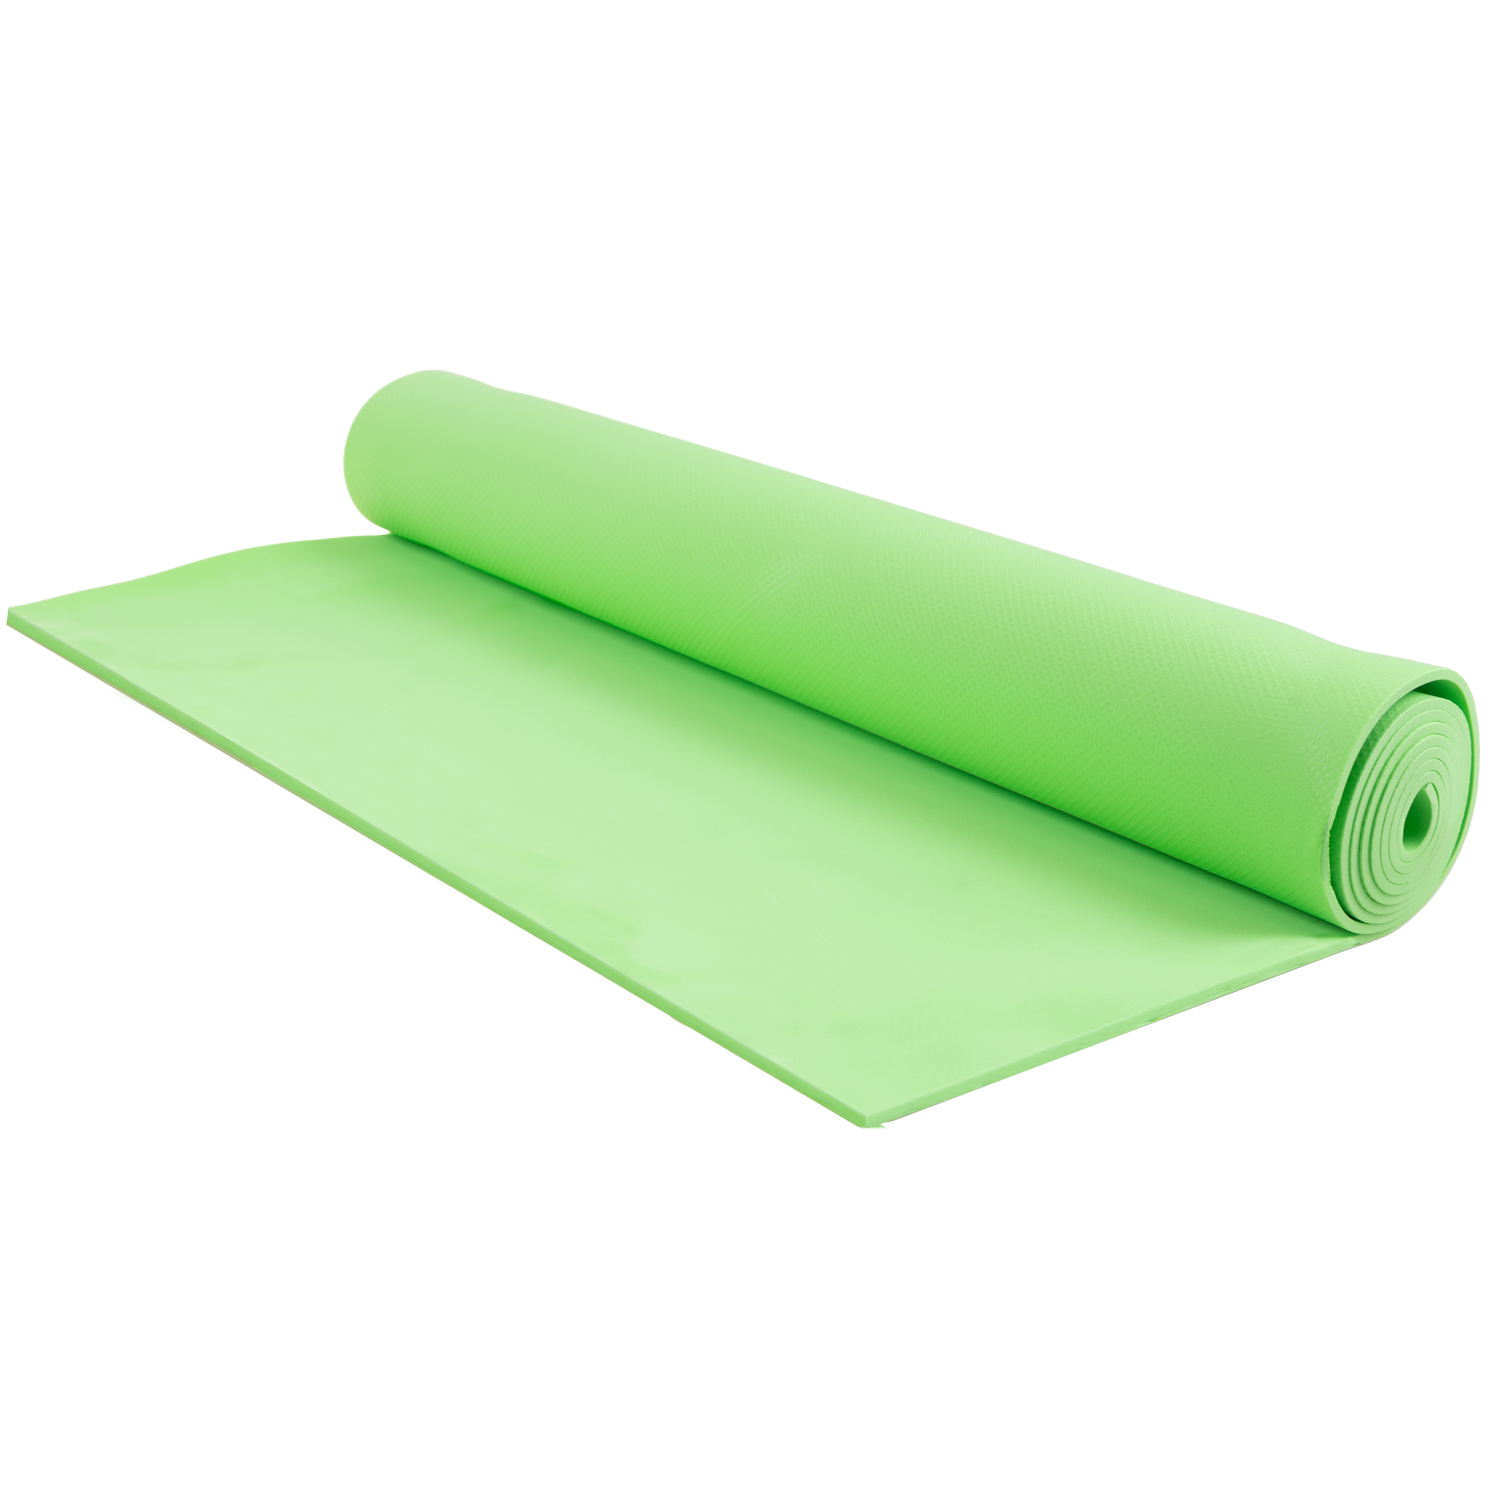 Tapis de yoga pour l'exercice et mise en forme - Vert pâle. Colour